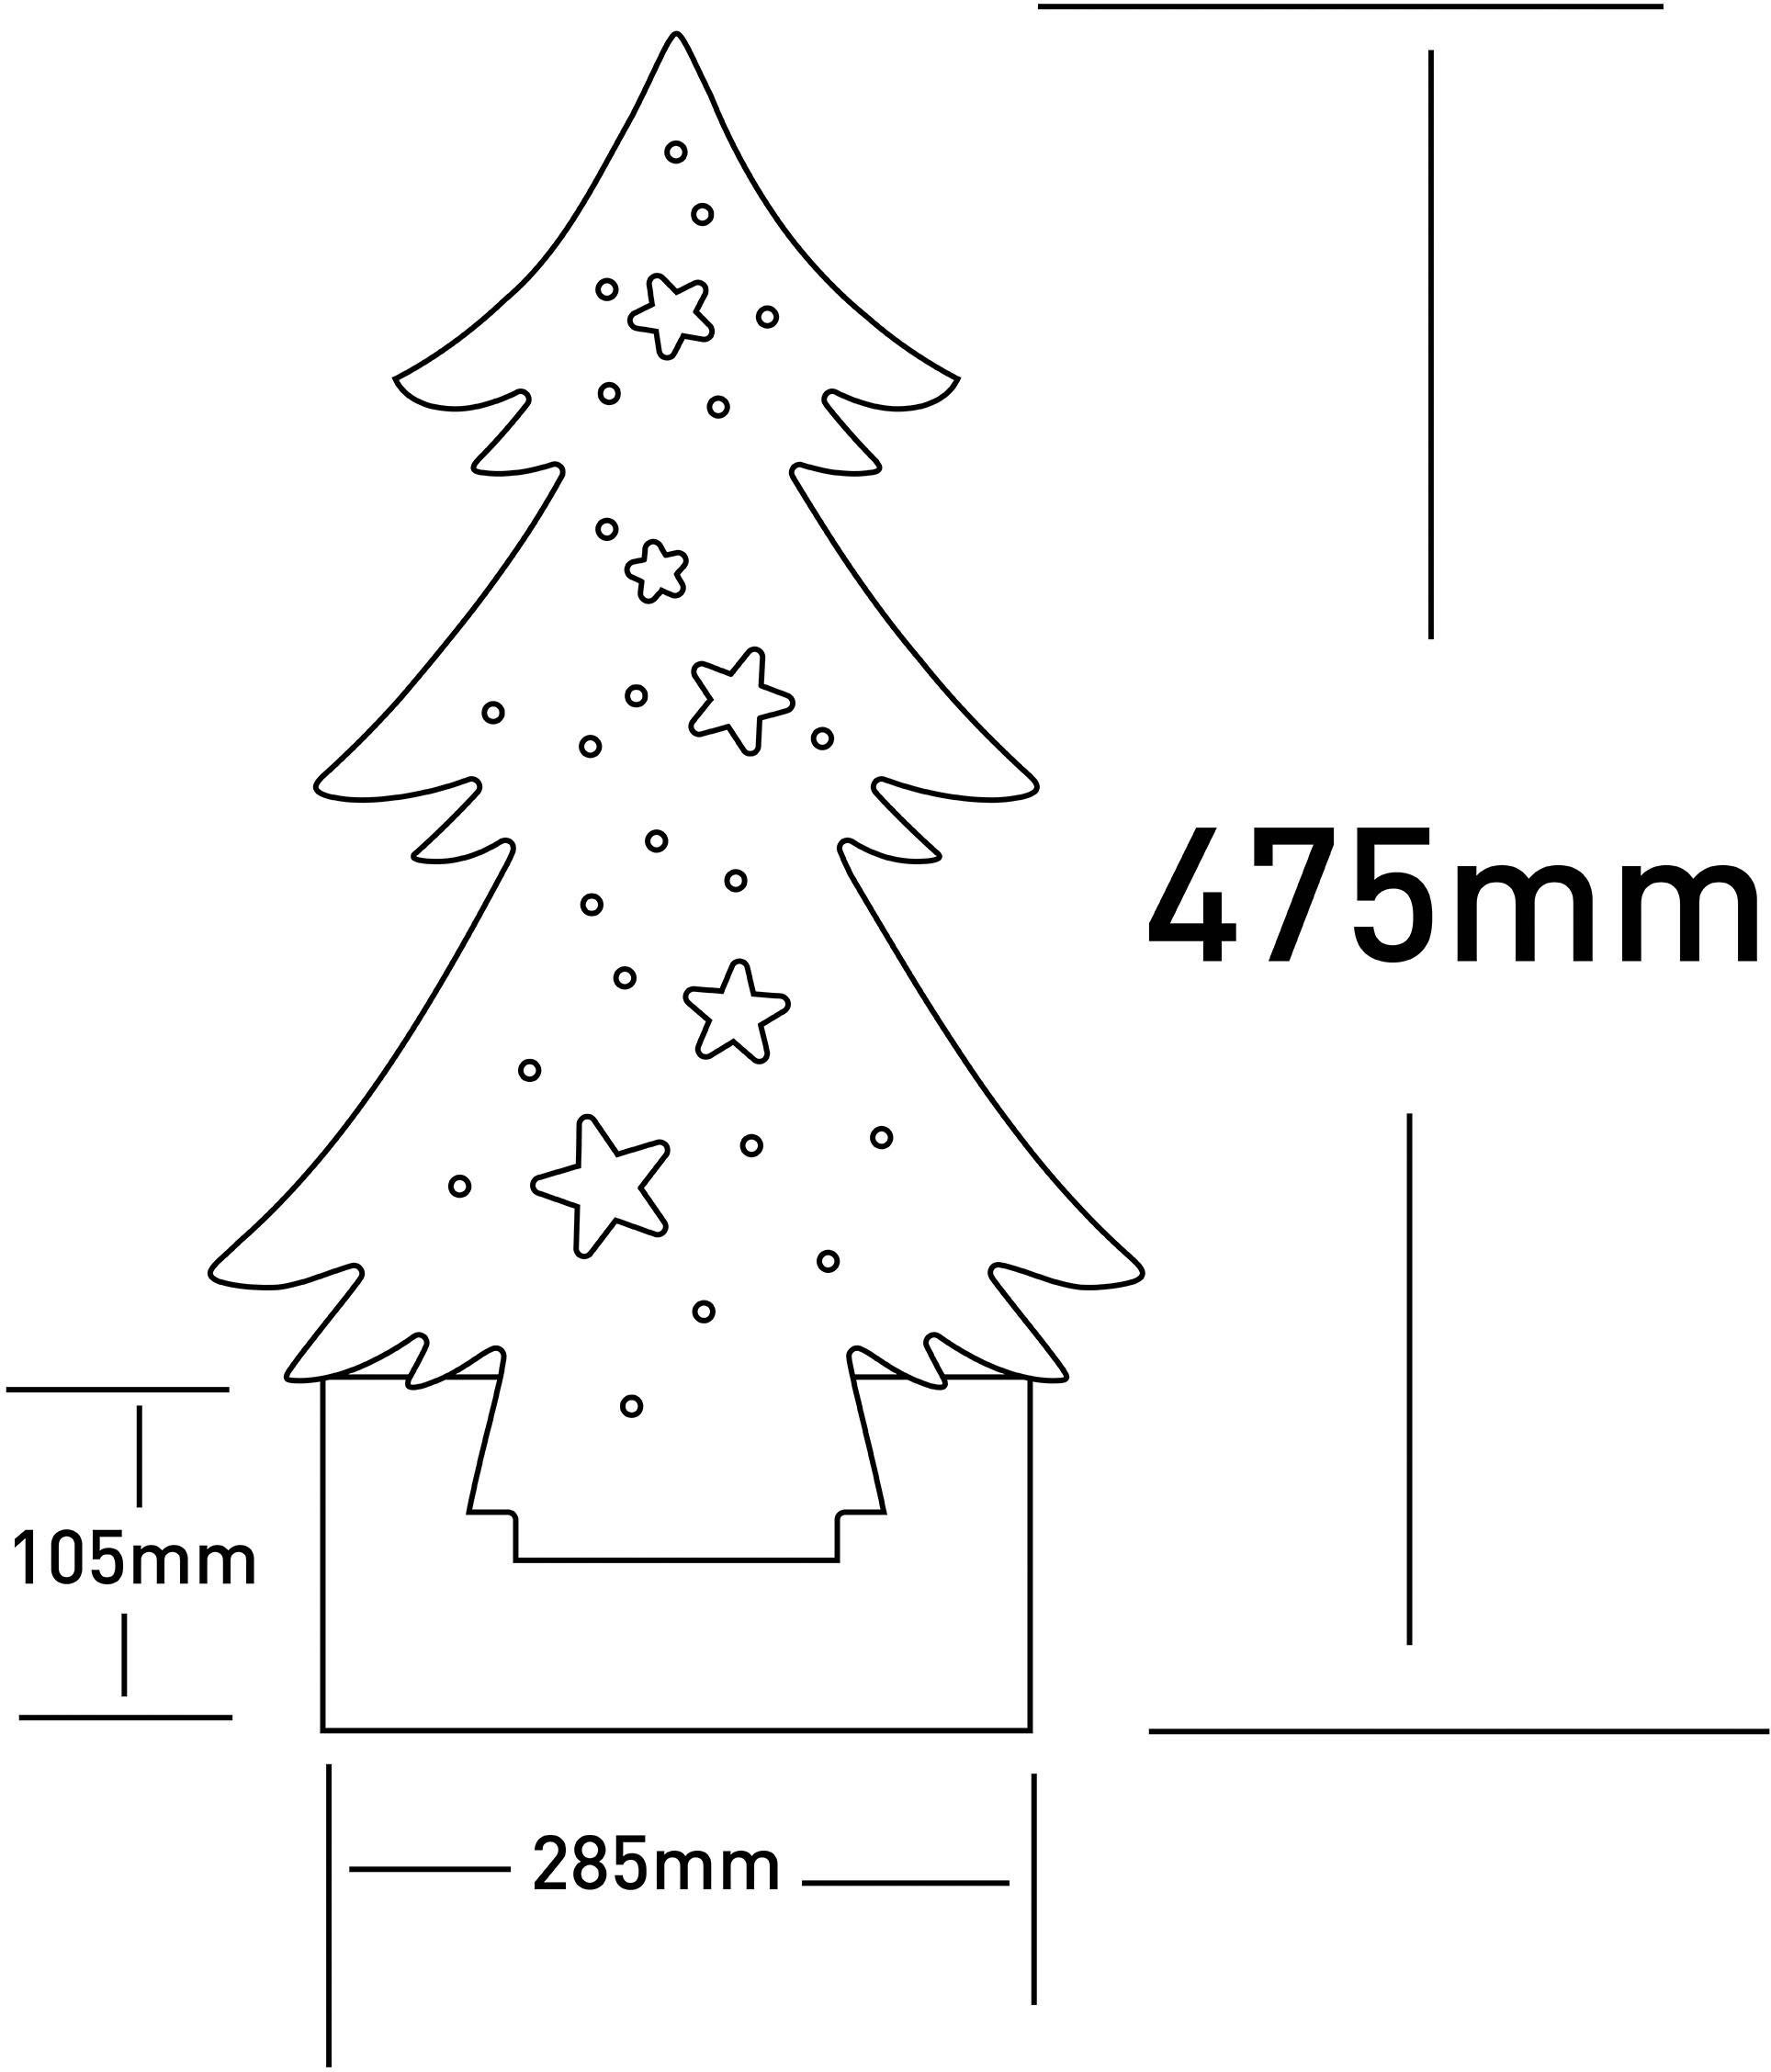 näve LED Höhe Warmweiß, fest Batteriebetrieben Baum LED Weihnachtsdeko 47,5 ca. cm, integriert, Timerfunktion, Holz-Stehleuchte, aus Holz, Tannenbaum